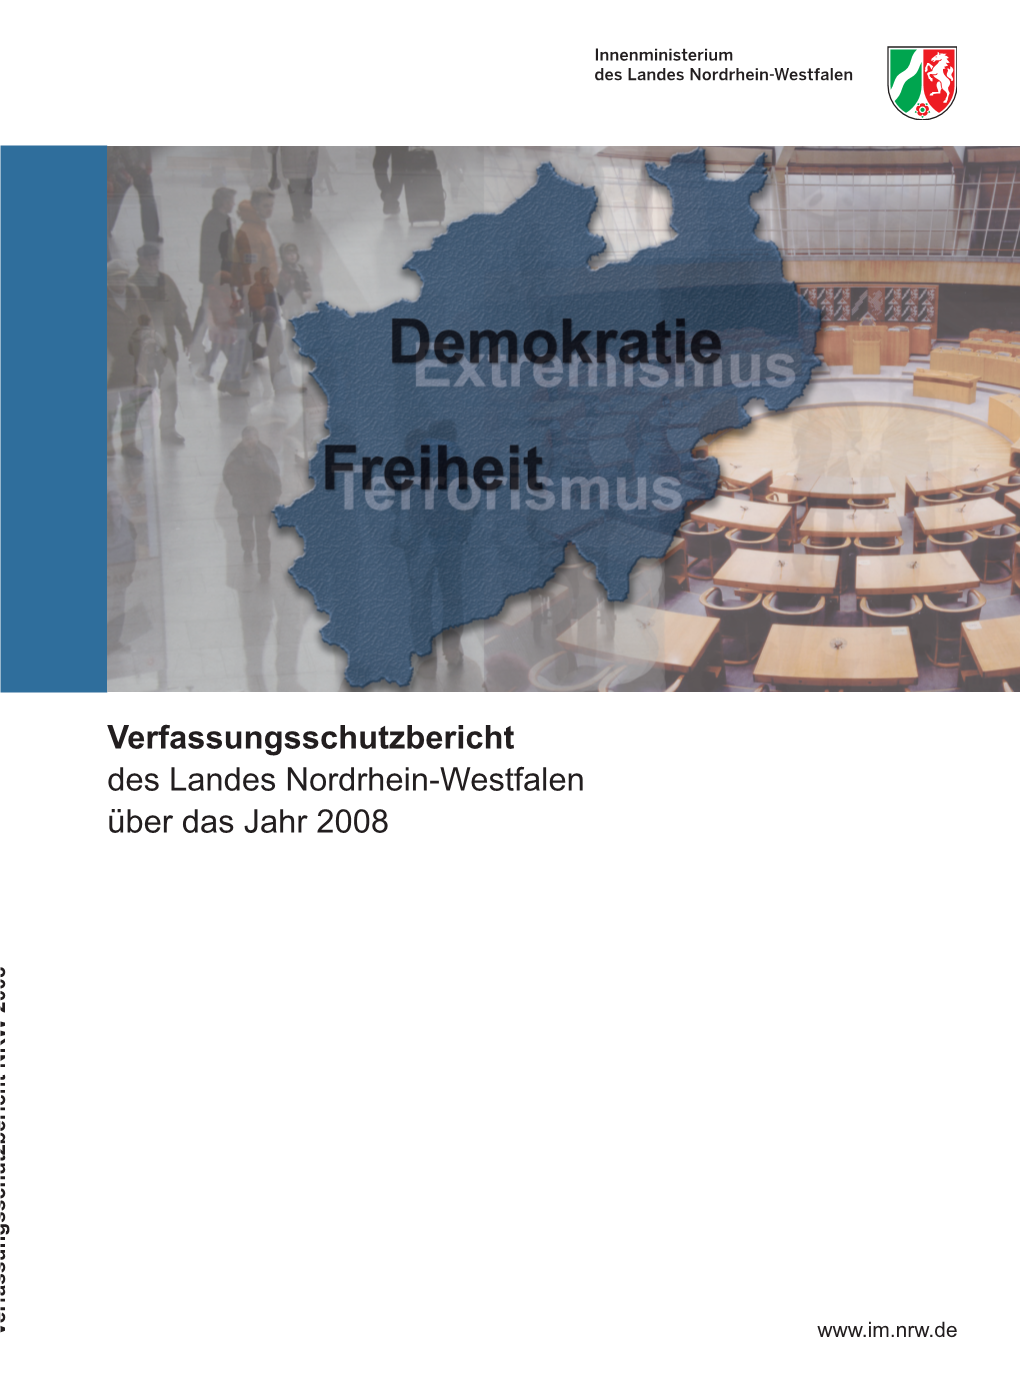 Verfassungsschutzbericht Des Landes Nordrhein-Westfalen Über Das Jahr 2008